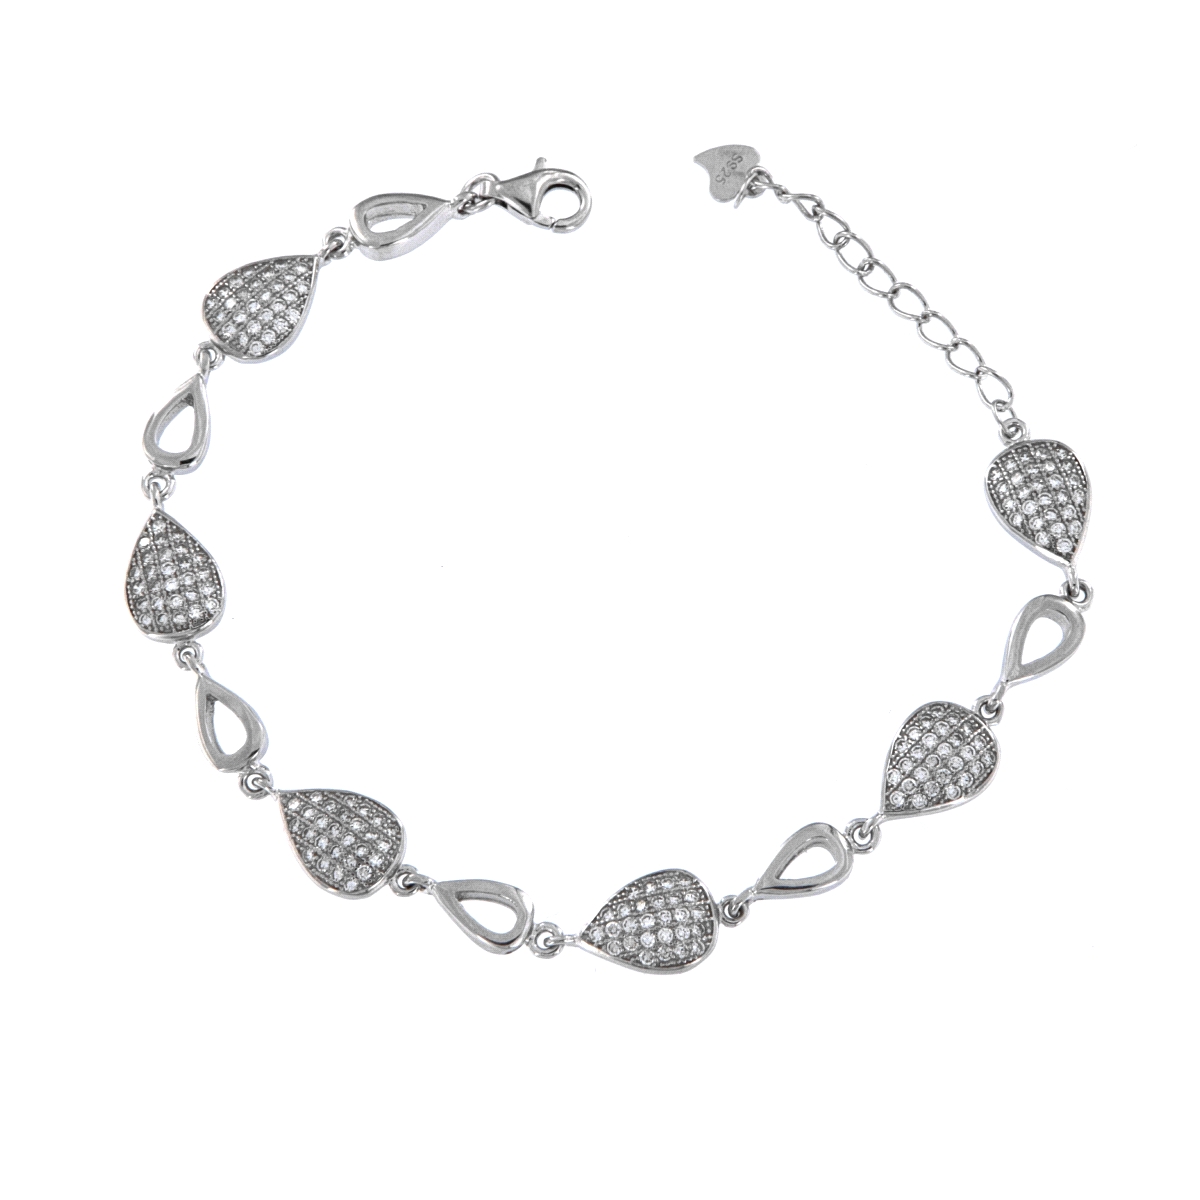 <p>Pulsera de plata entrelazada con adornos en forma de gota y decorada con circonitas blancas. </p>
<p>Plata de primera ley, 92